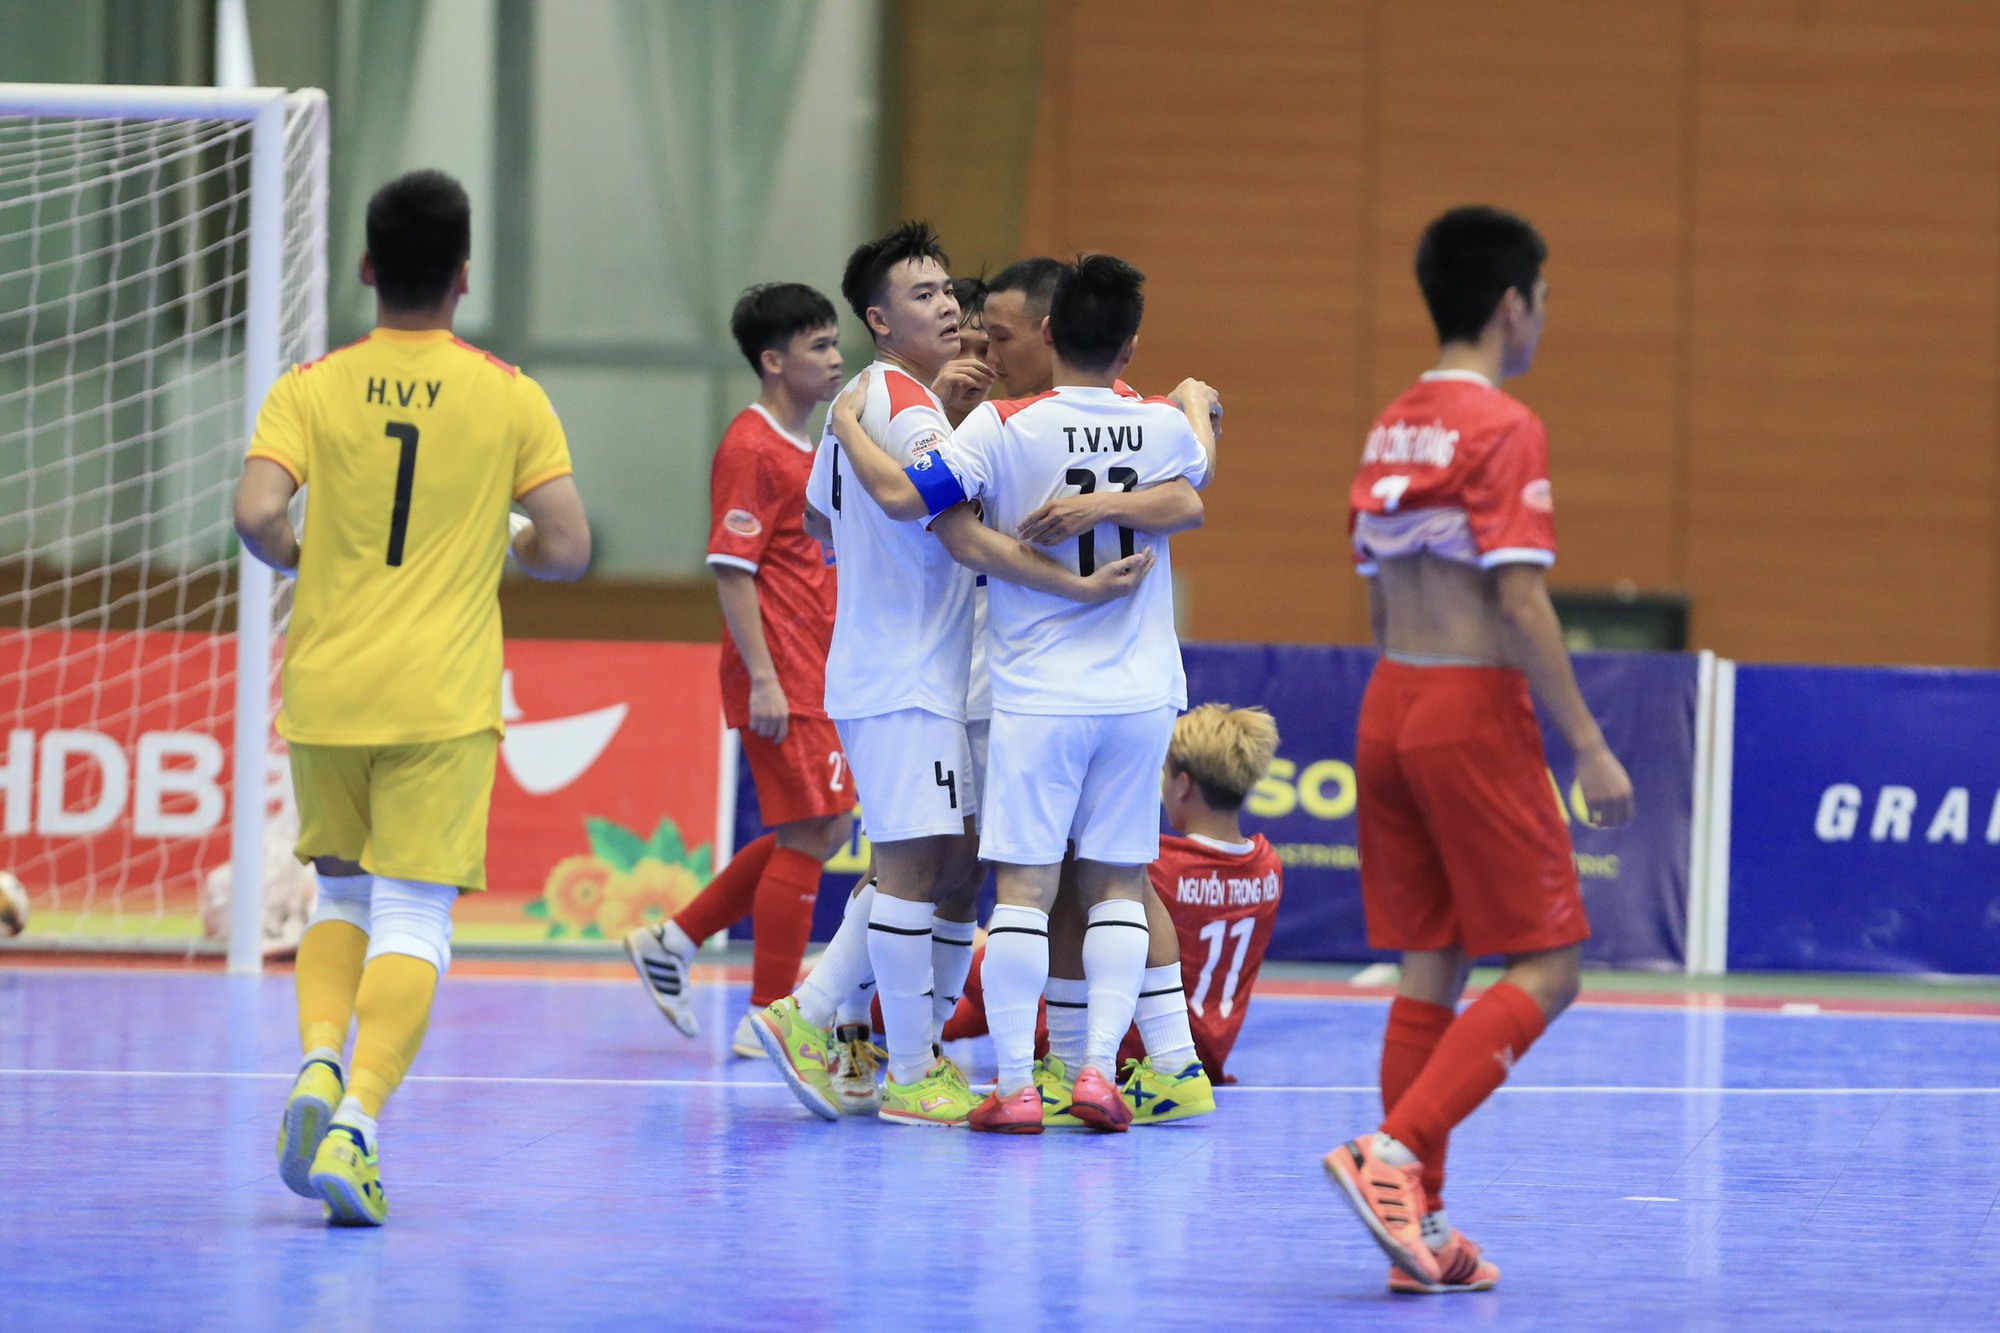 CLB Thái Sơn Nam có chiến thắng quan trọng khi giải futsal HDBank VĐQG chỉ còn 2 vòng